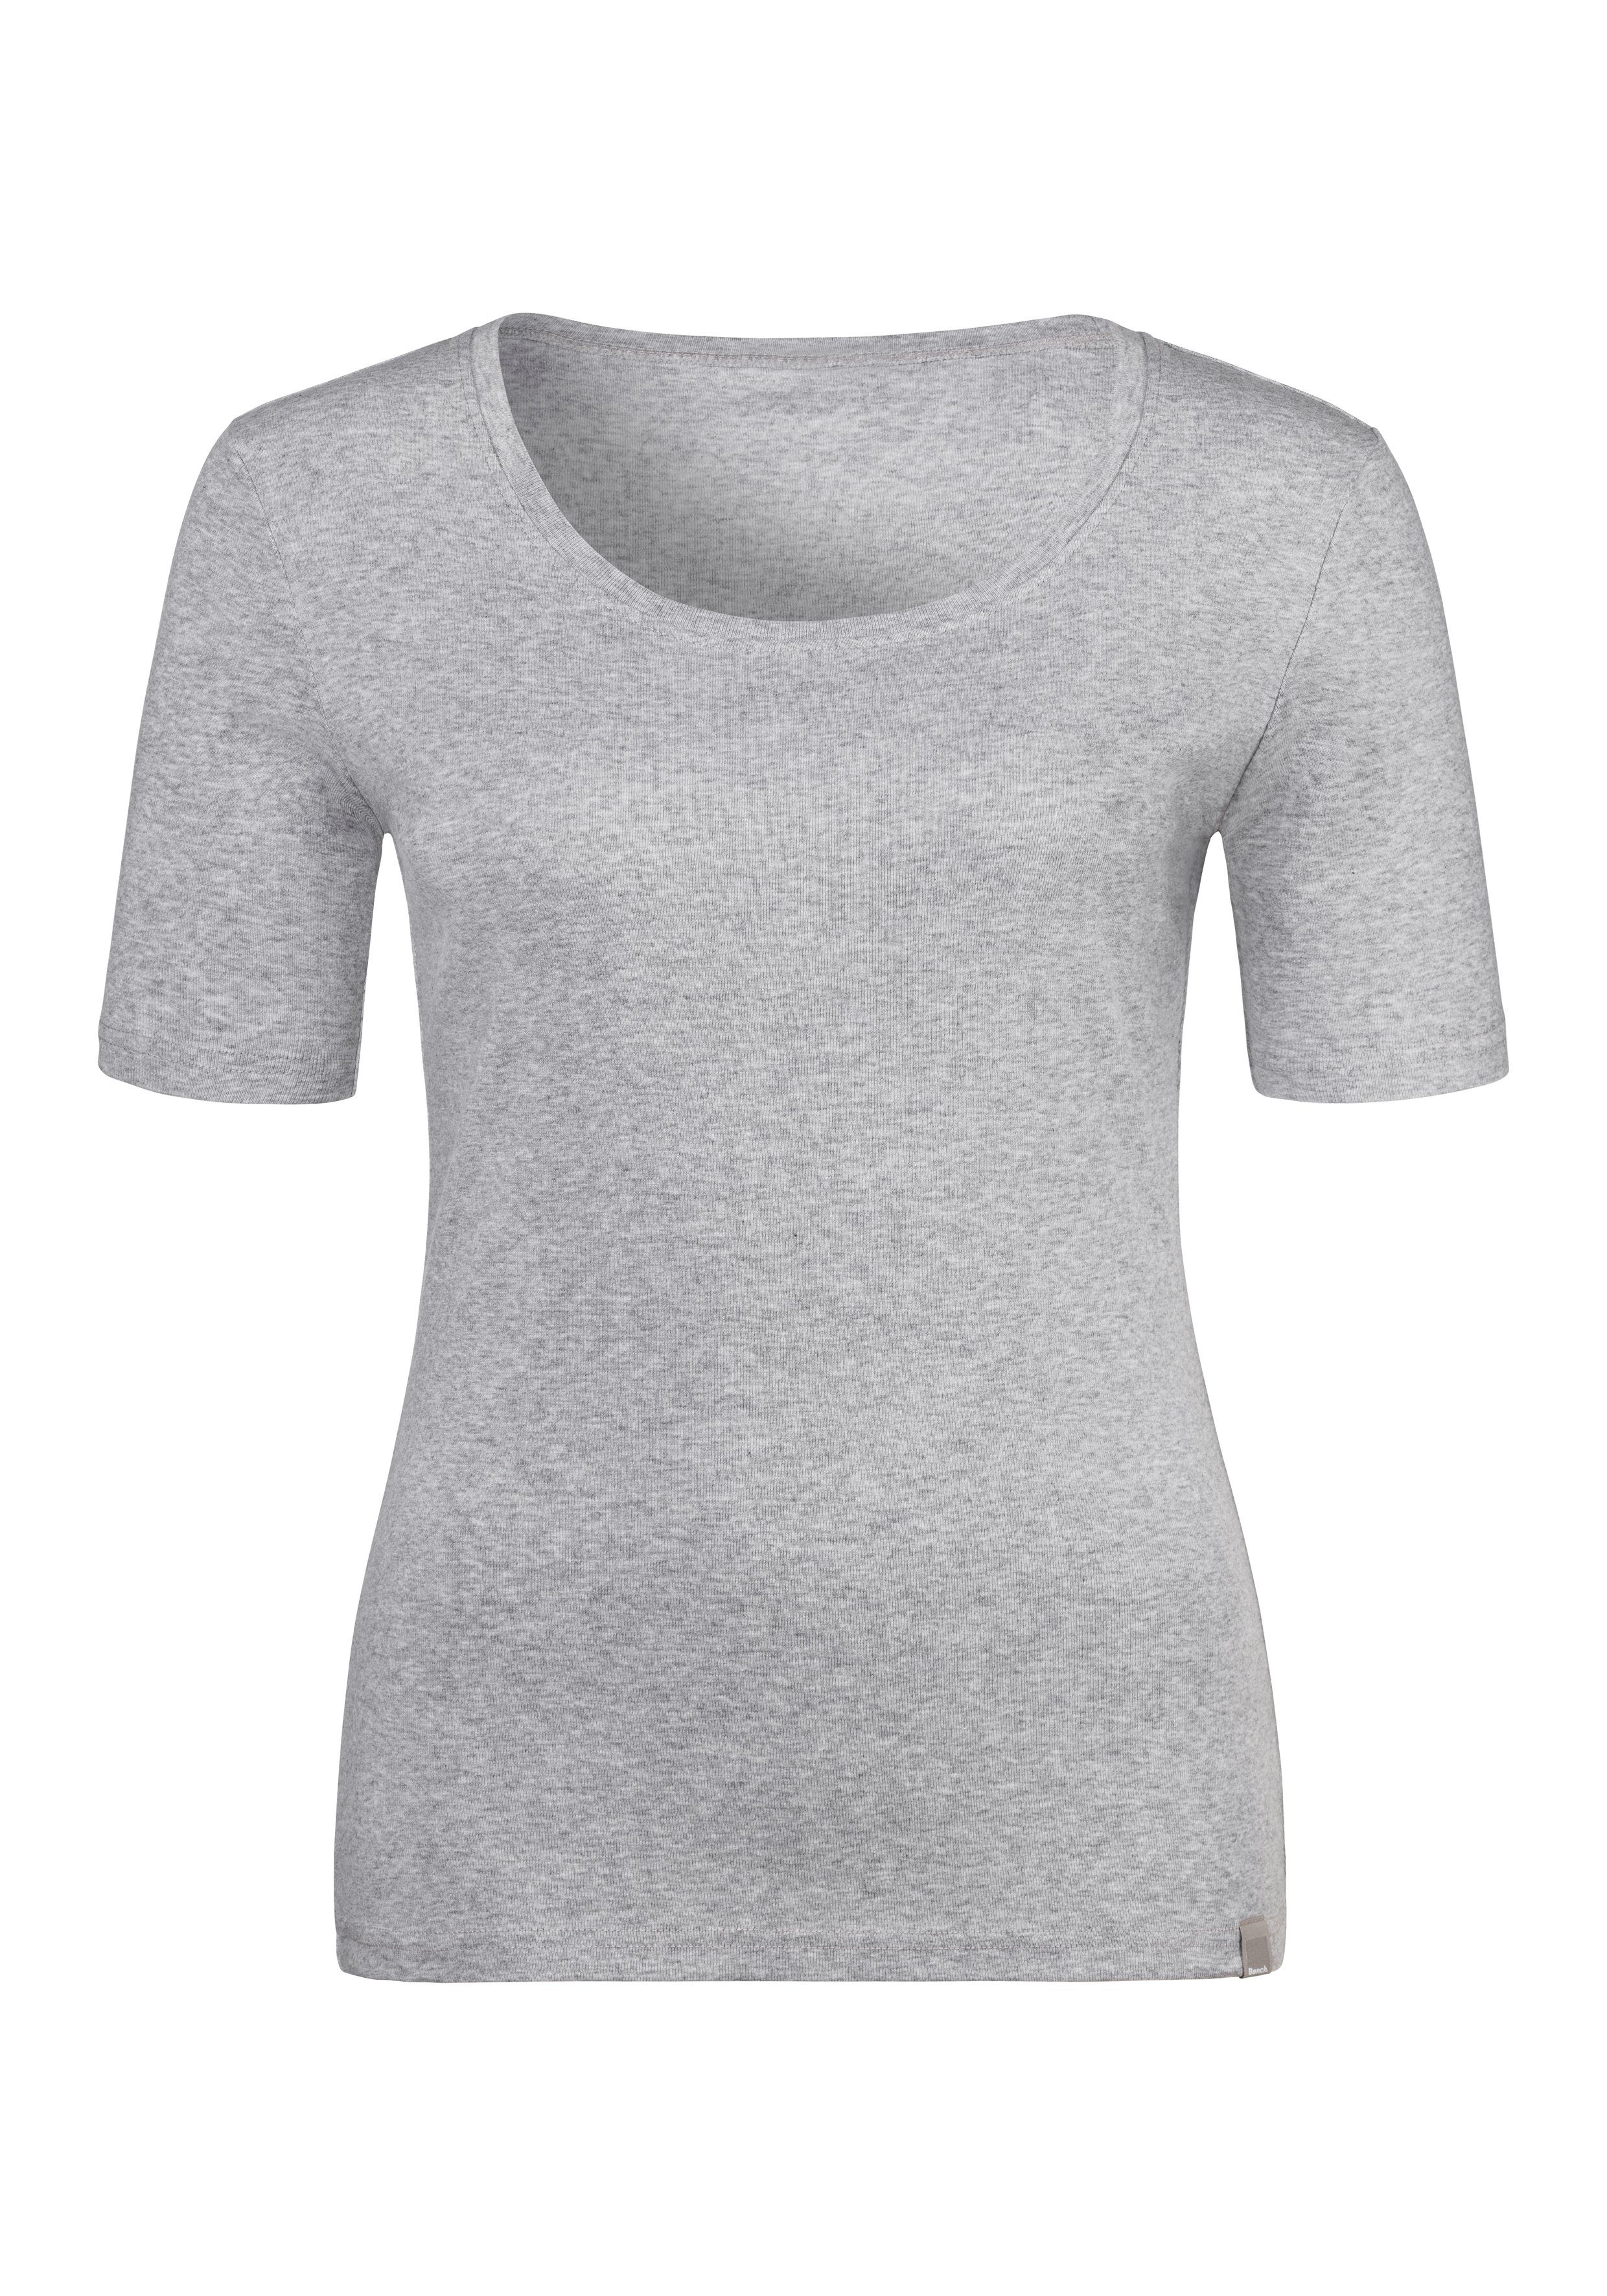 grau-meliert schwarz, T-Shirt Feinripp-Qualität, Bench. aus Unterziehshirt (2er-Pack) weicher